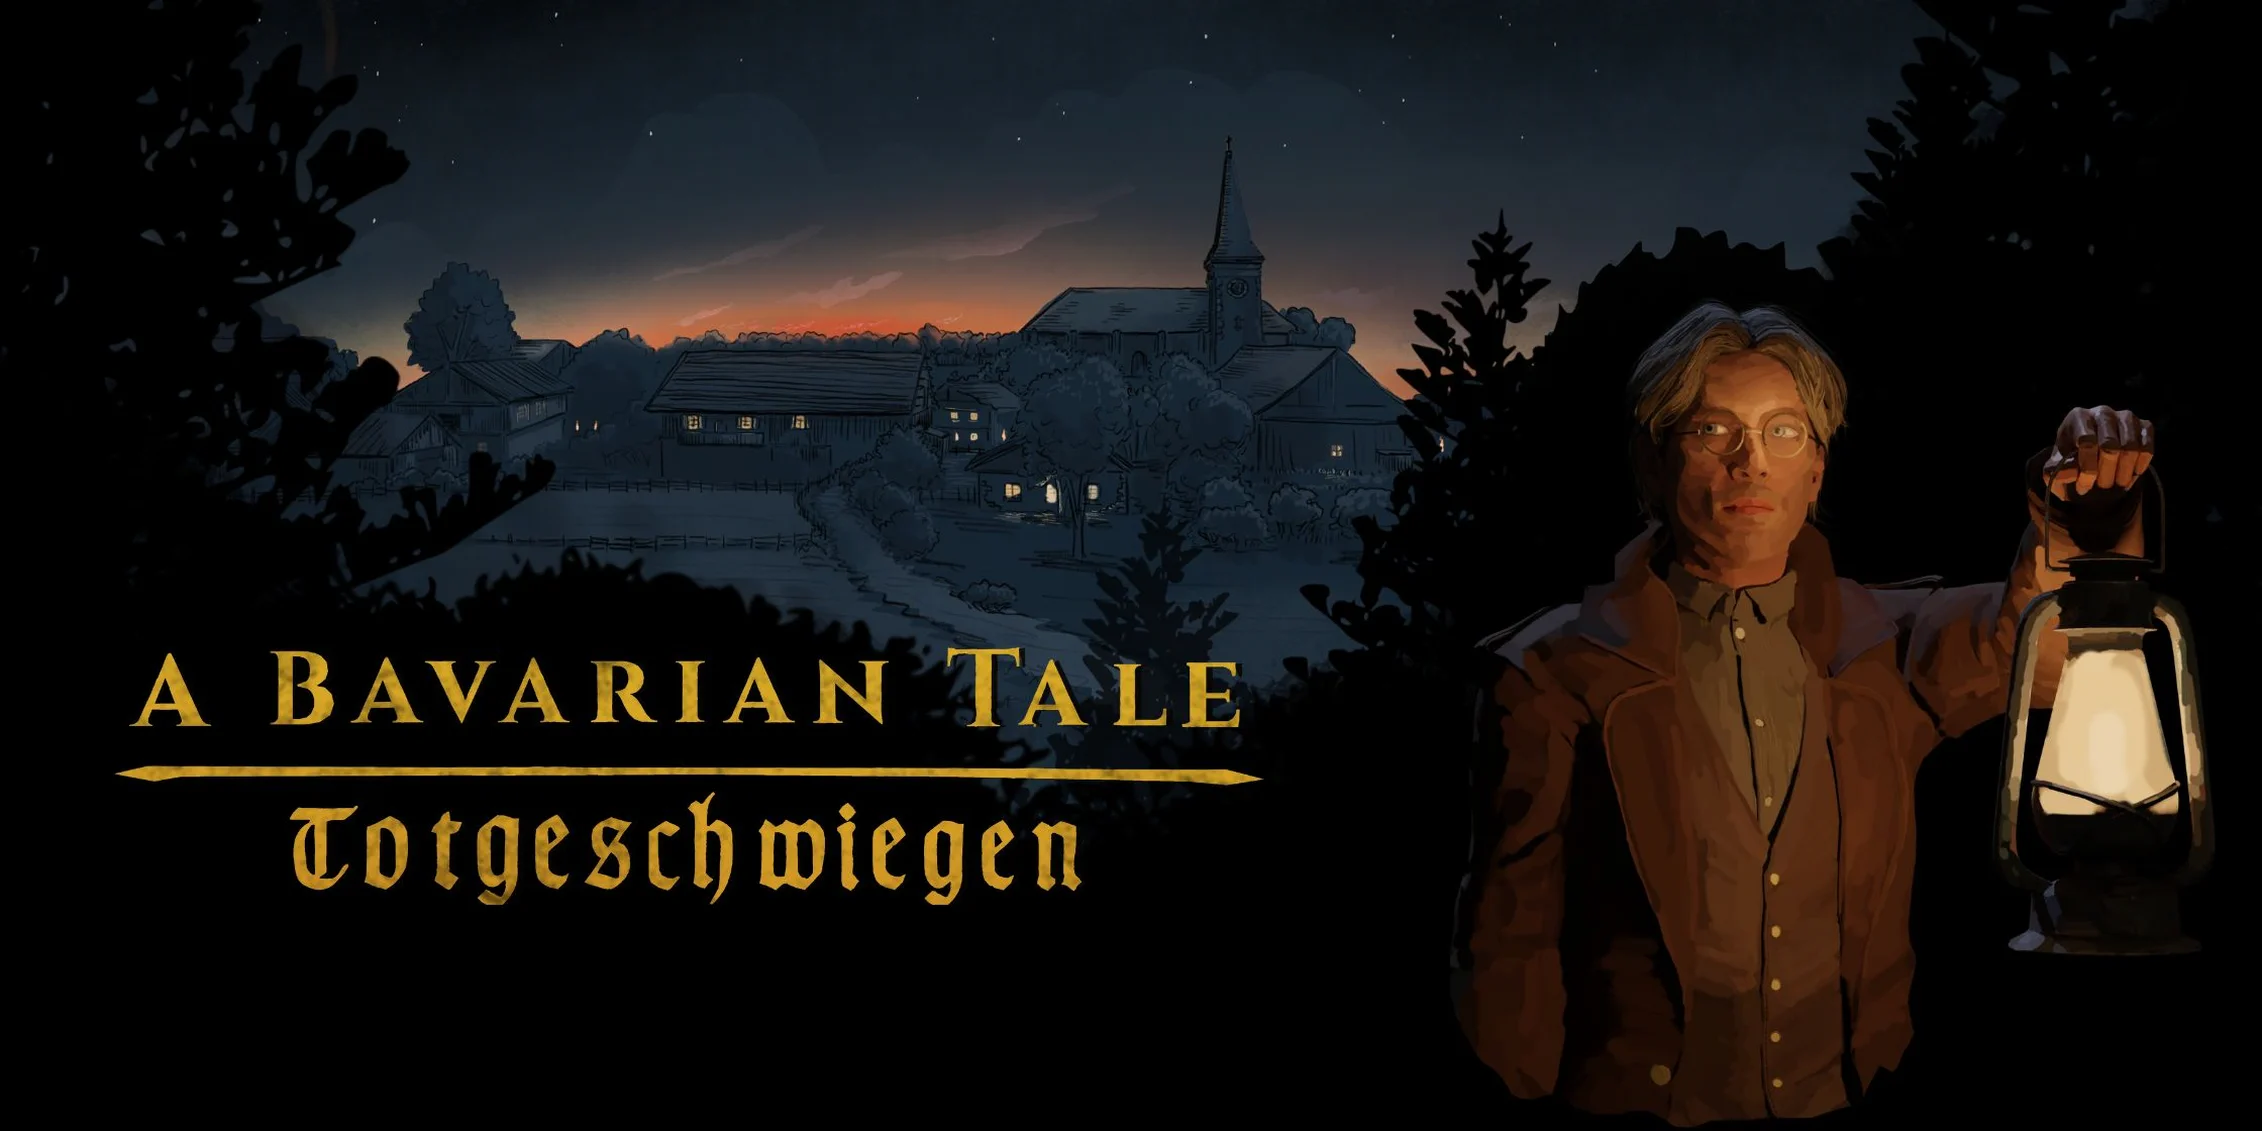 Ролевой детектив A Bavarian Tale: Totgeschwiegen вышел в Steam.